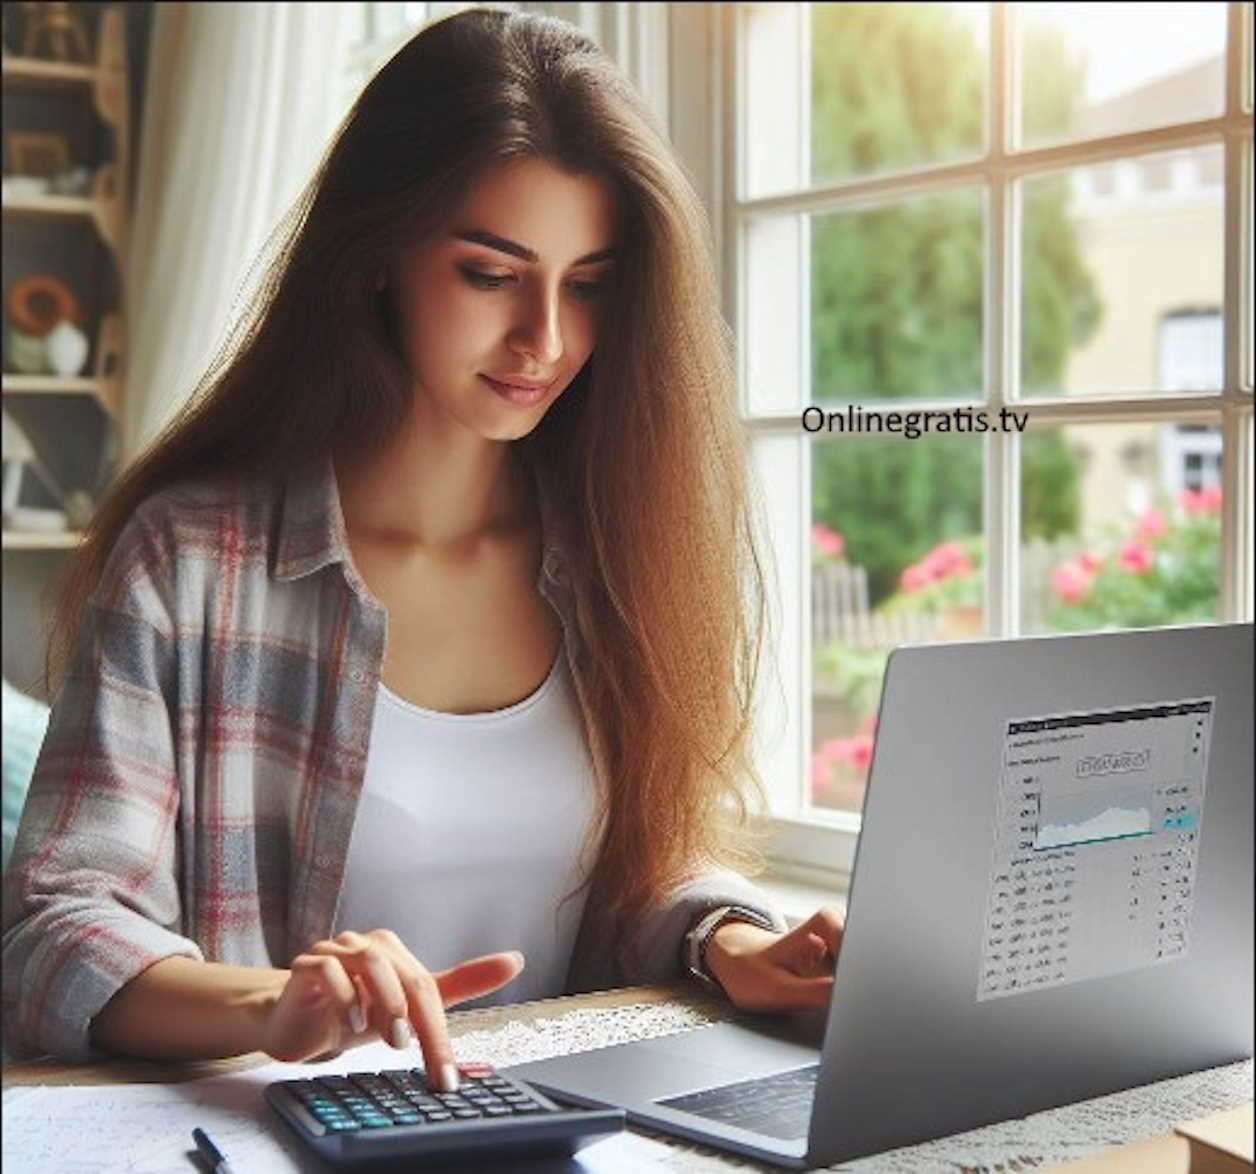 Una joven sonriente usando una calculadora online gratis en su portátil